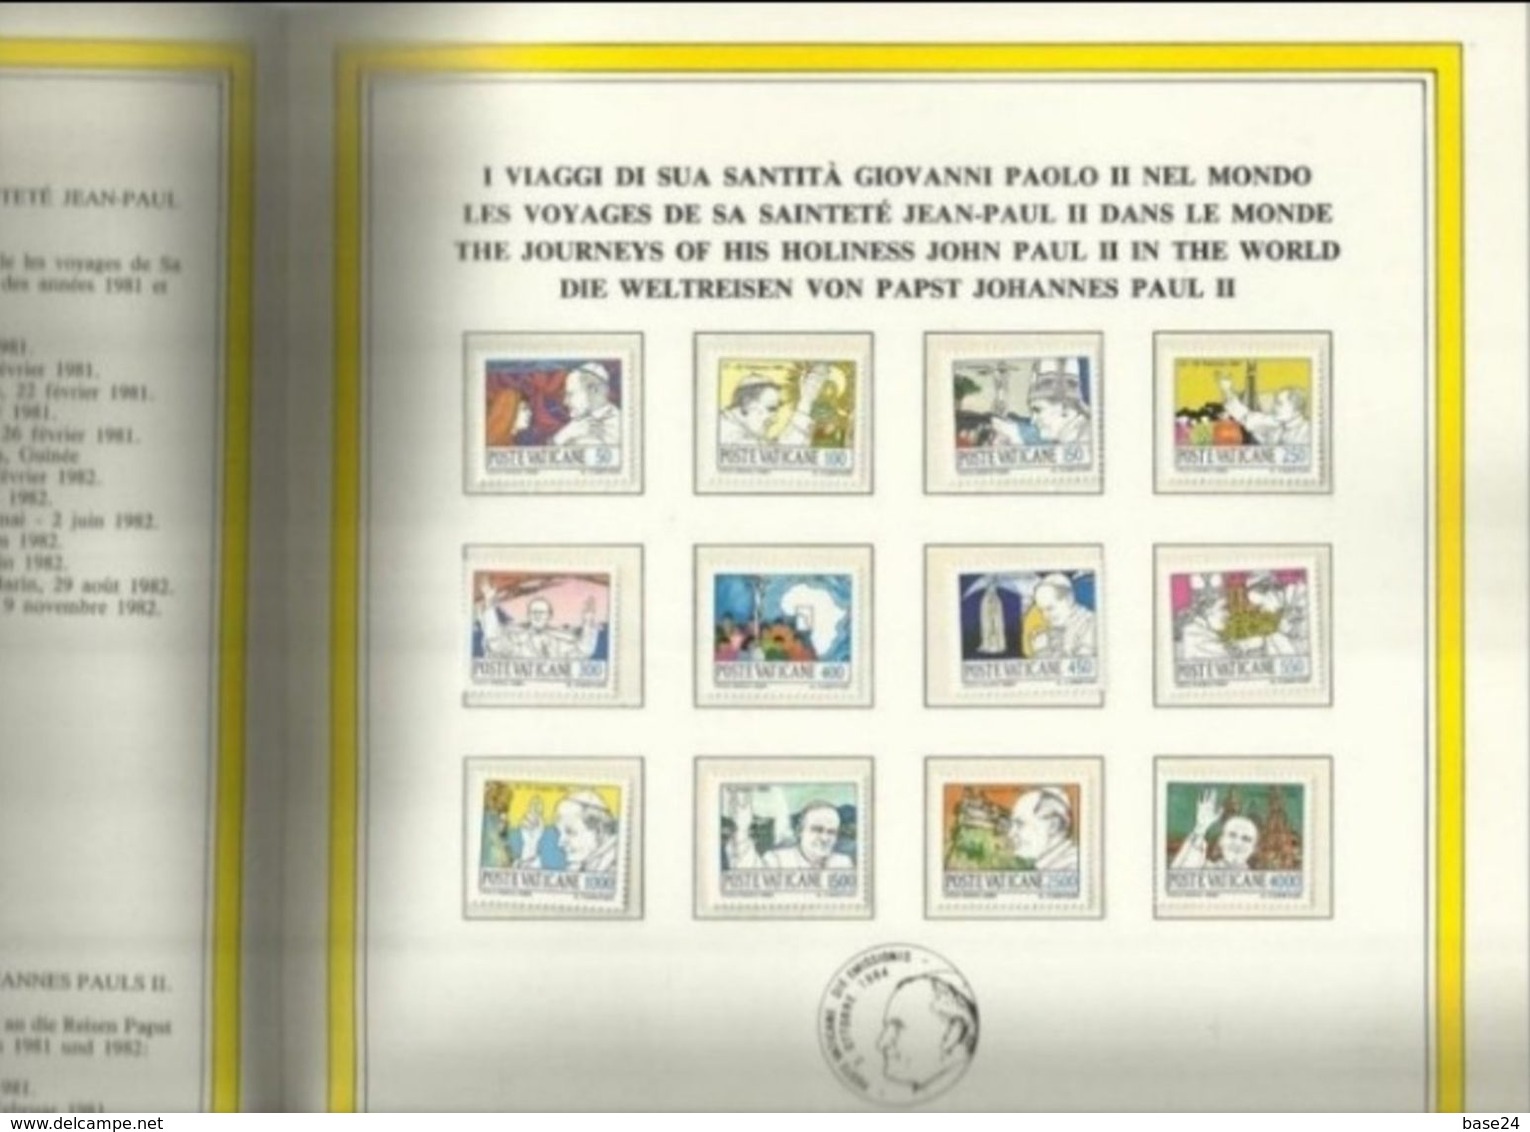 1984 Vaticano Vatican LIBRO UFFICIALE VATICANO 1984 - BOOK 1984 - Variedades & Curiosidades